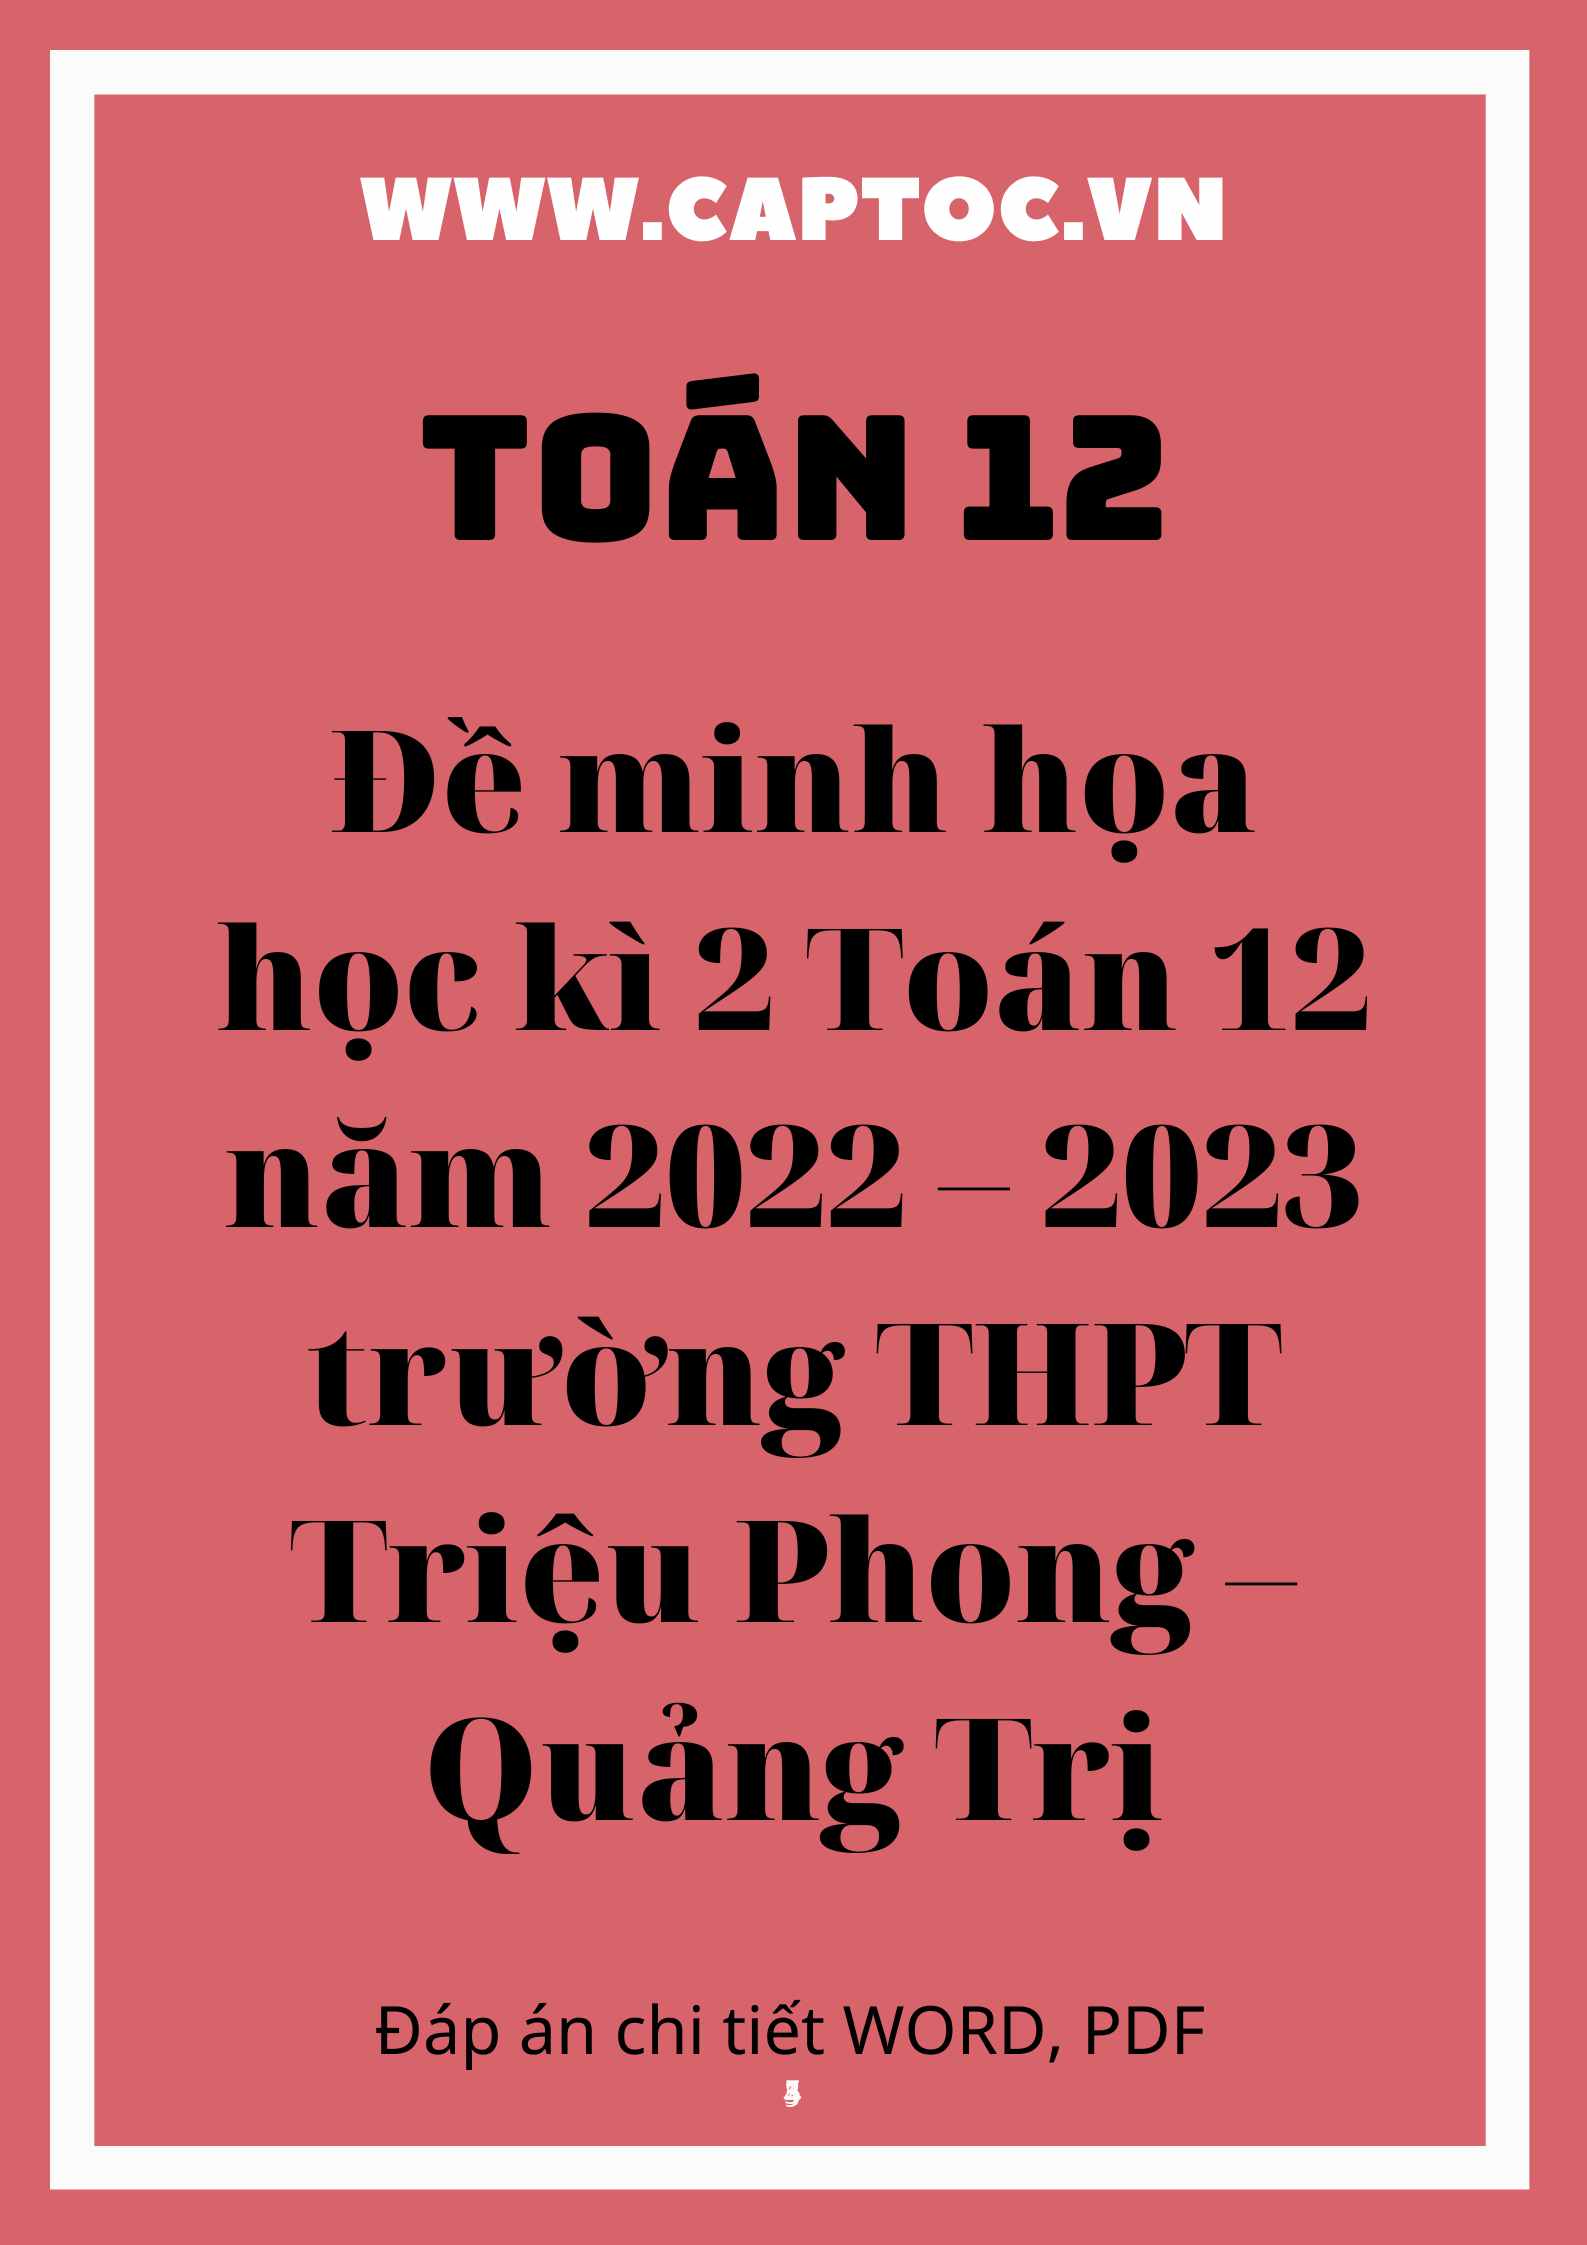 Đề minh họa học kì 2 Toán 12 năm 2022 – 2023 trường THPT Triệu Phong – Quảng Trị